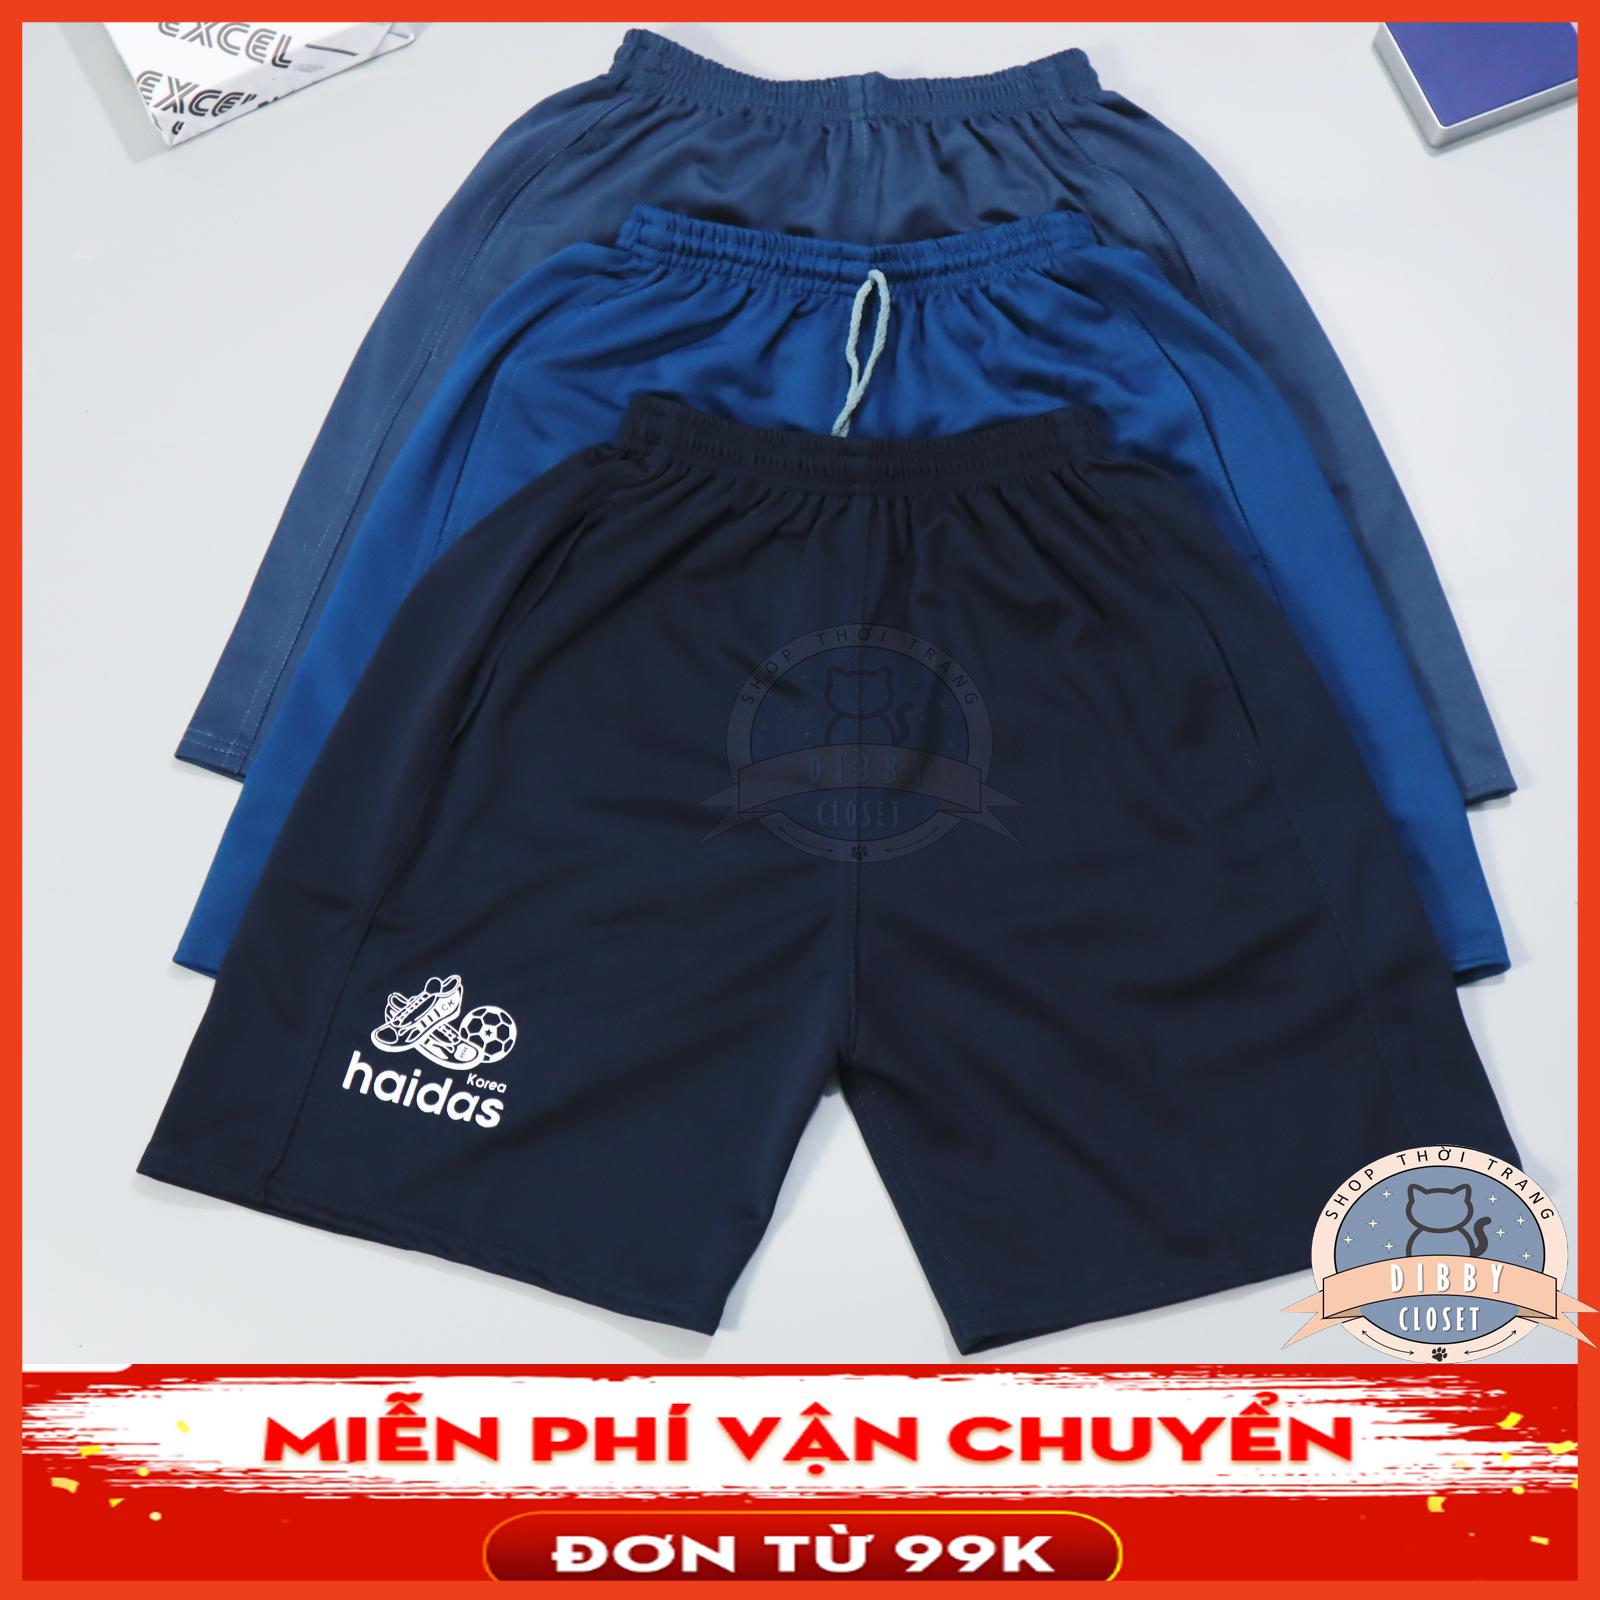 Combo 3 quần shorts đùi nam thun Sport chất liệu vải thun,dành cho người từ 45 - 75kg,thích hợp mặc nhà thể thao dạo phố